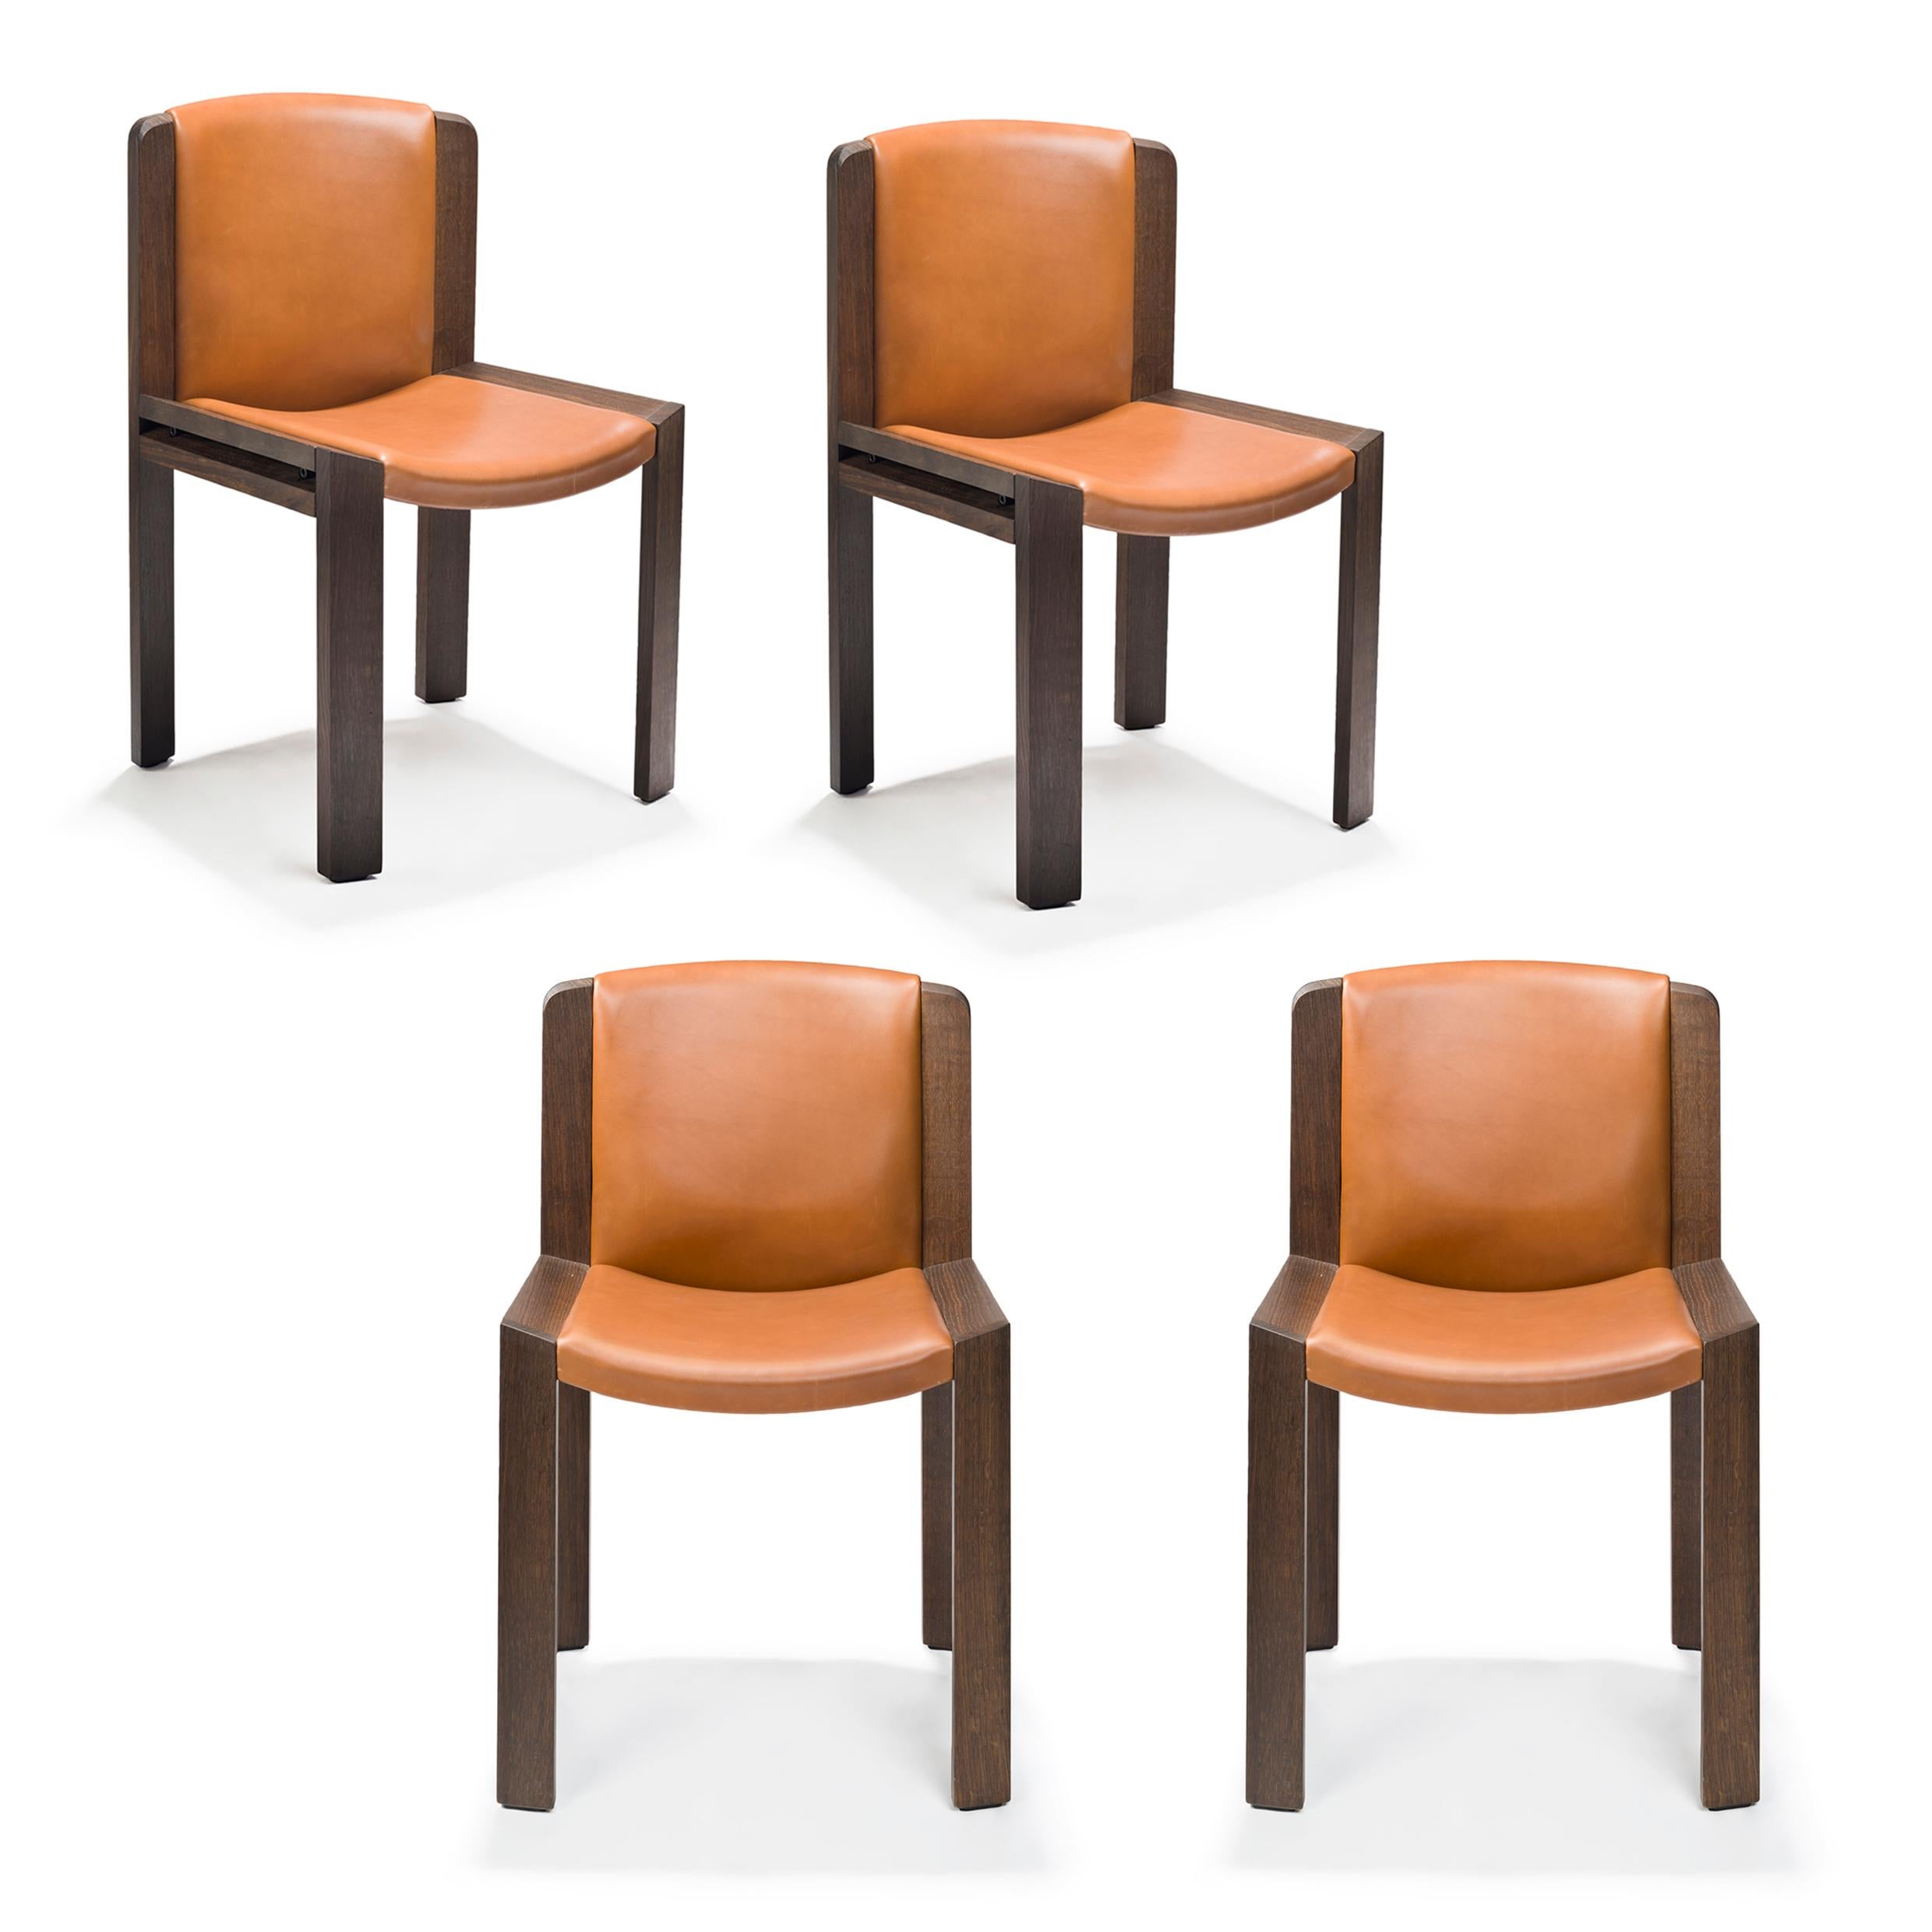 Stuhl, entworfen von Joe Colombo im Jahr 1965.

Der von dem zukunftsorientierten italienischen Designer Joe Colombo entworfene Stuhl 300 ist ein wunderschönes Beispiel für sein funktionales Designverständnis. Sitz und Rückenlehne sind gepolstert und